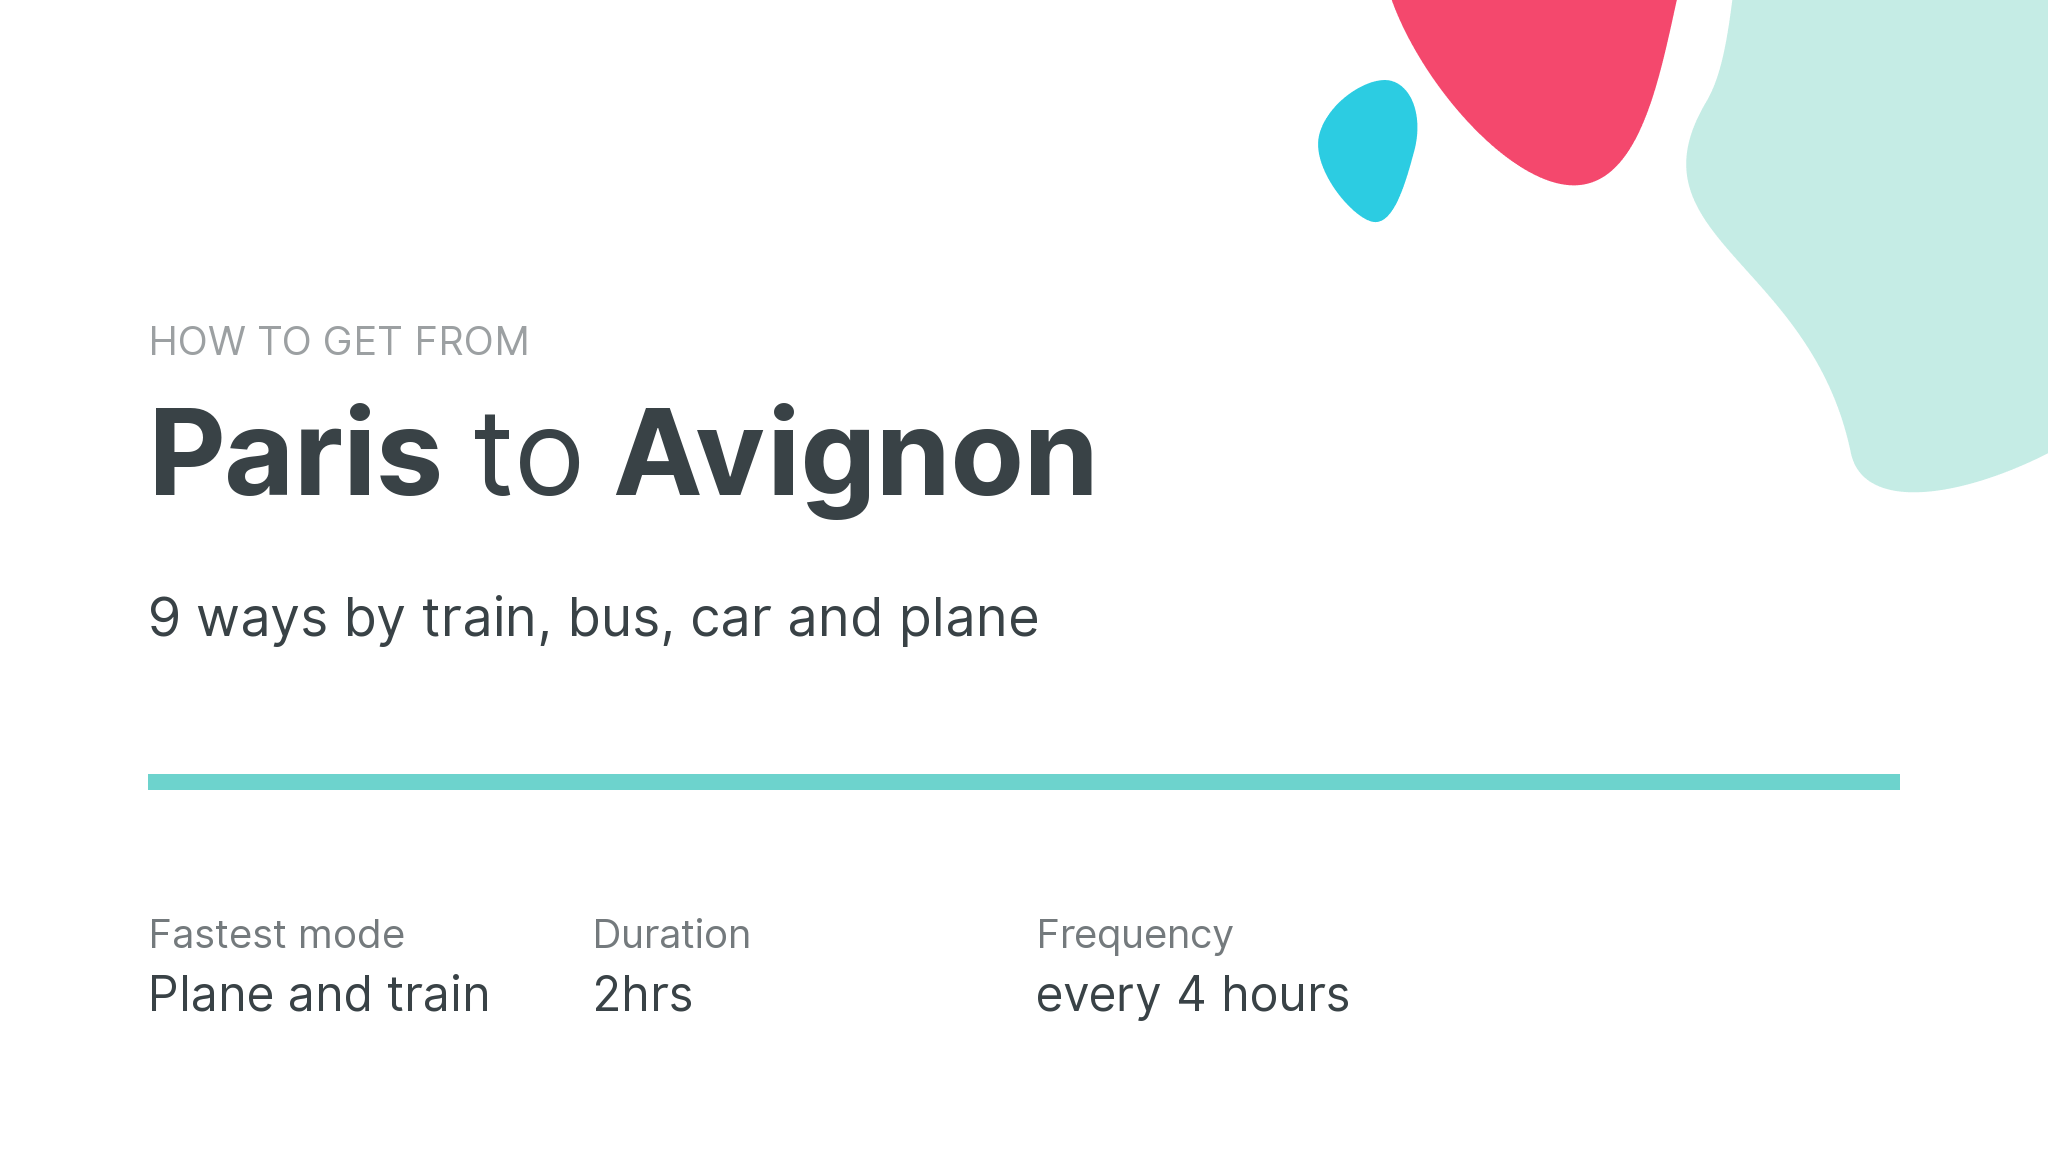 How do I get from Paris to Avignon